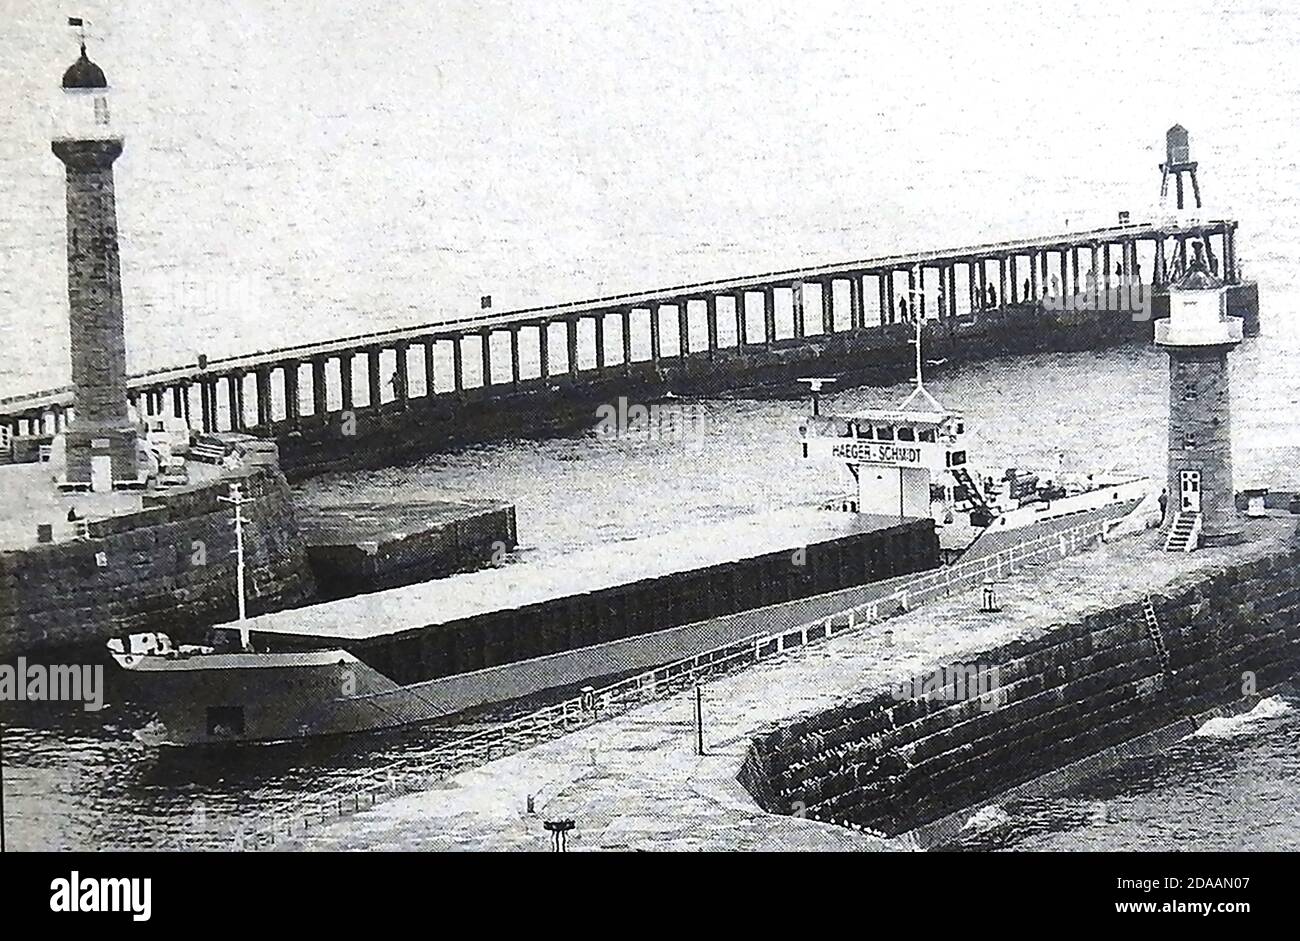 Ein historisches Foto der UNION PLUTO , eines der letzten Containerschiffe, die zwischen den viktorianischen Pfeilern und Leuchttürmen in Whitby, Yorkshire, Großbritannien, kurz vor dem Ende des Frachthandels vorbeifuhren. Das 82.5 Meter lange Frachtschiff Union Pluto wurde 1984 gebaut. (Rufzeichen MJAB). Stockfoto